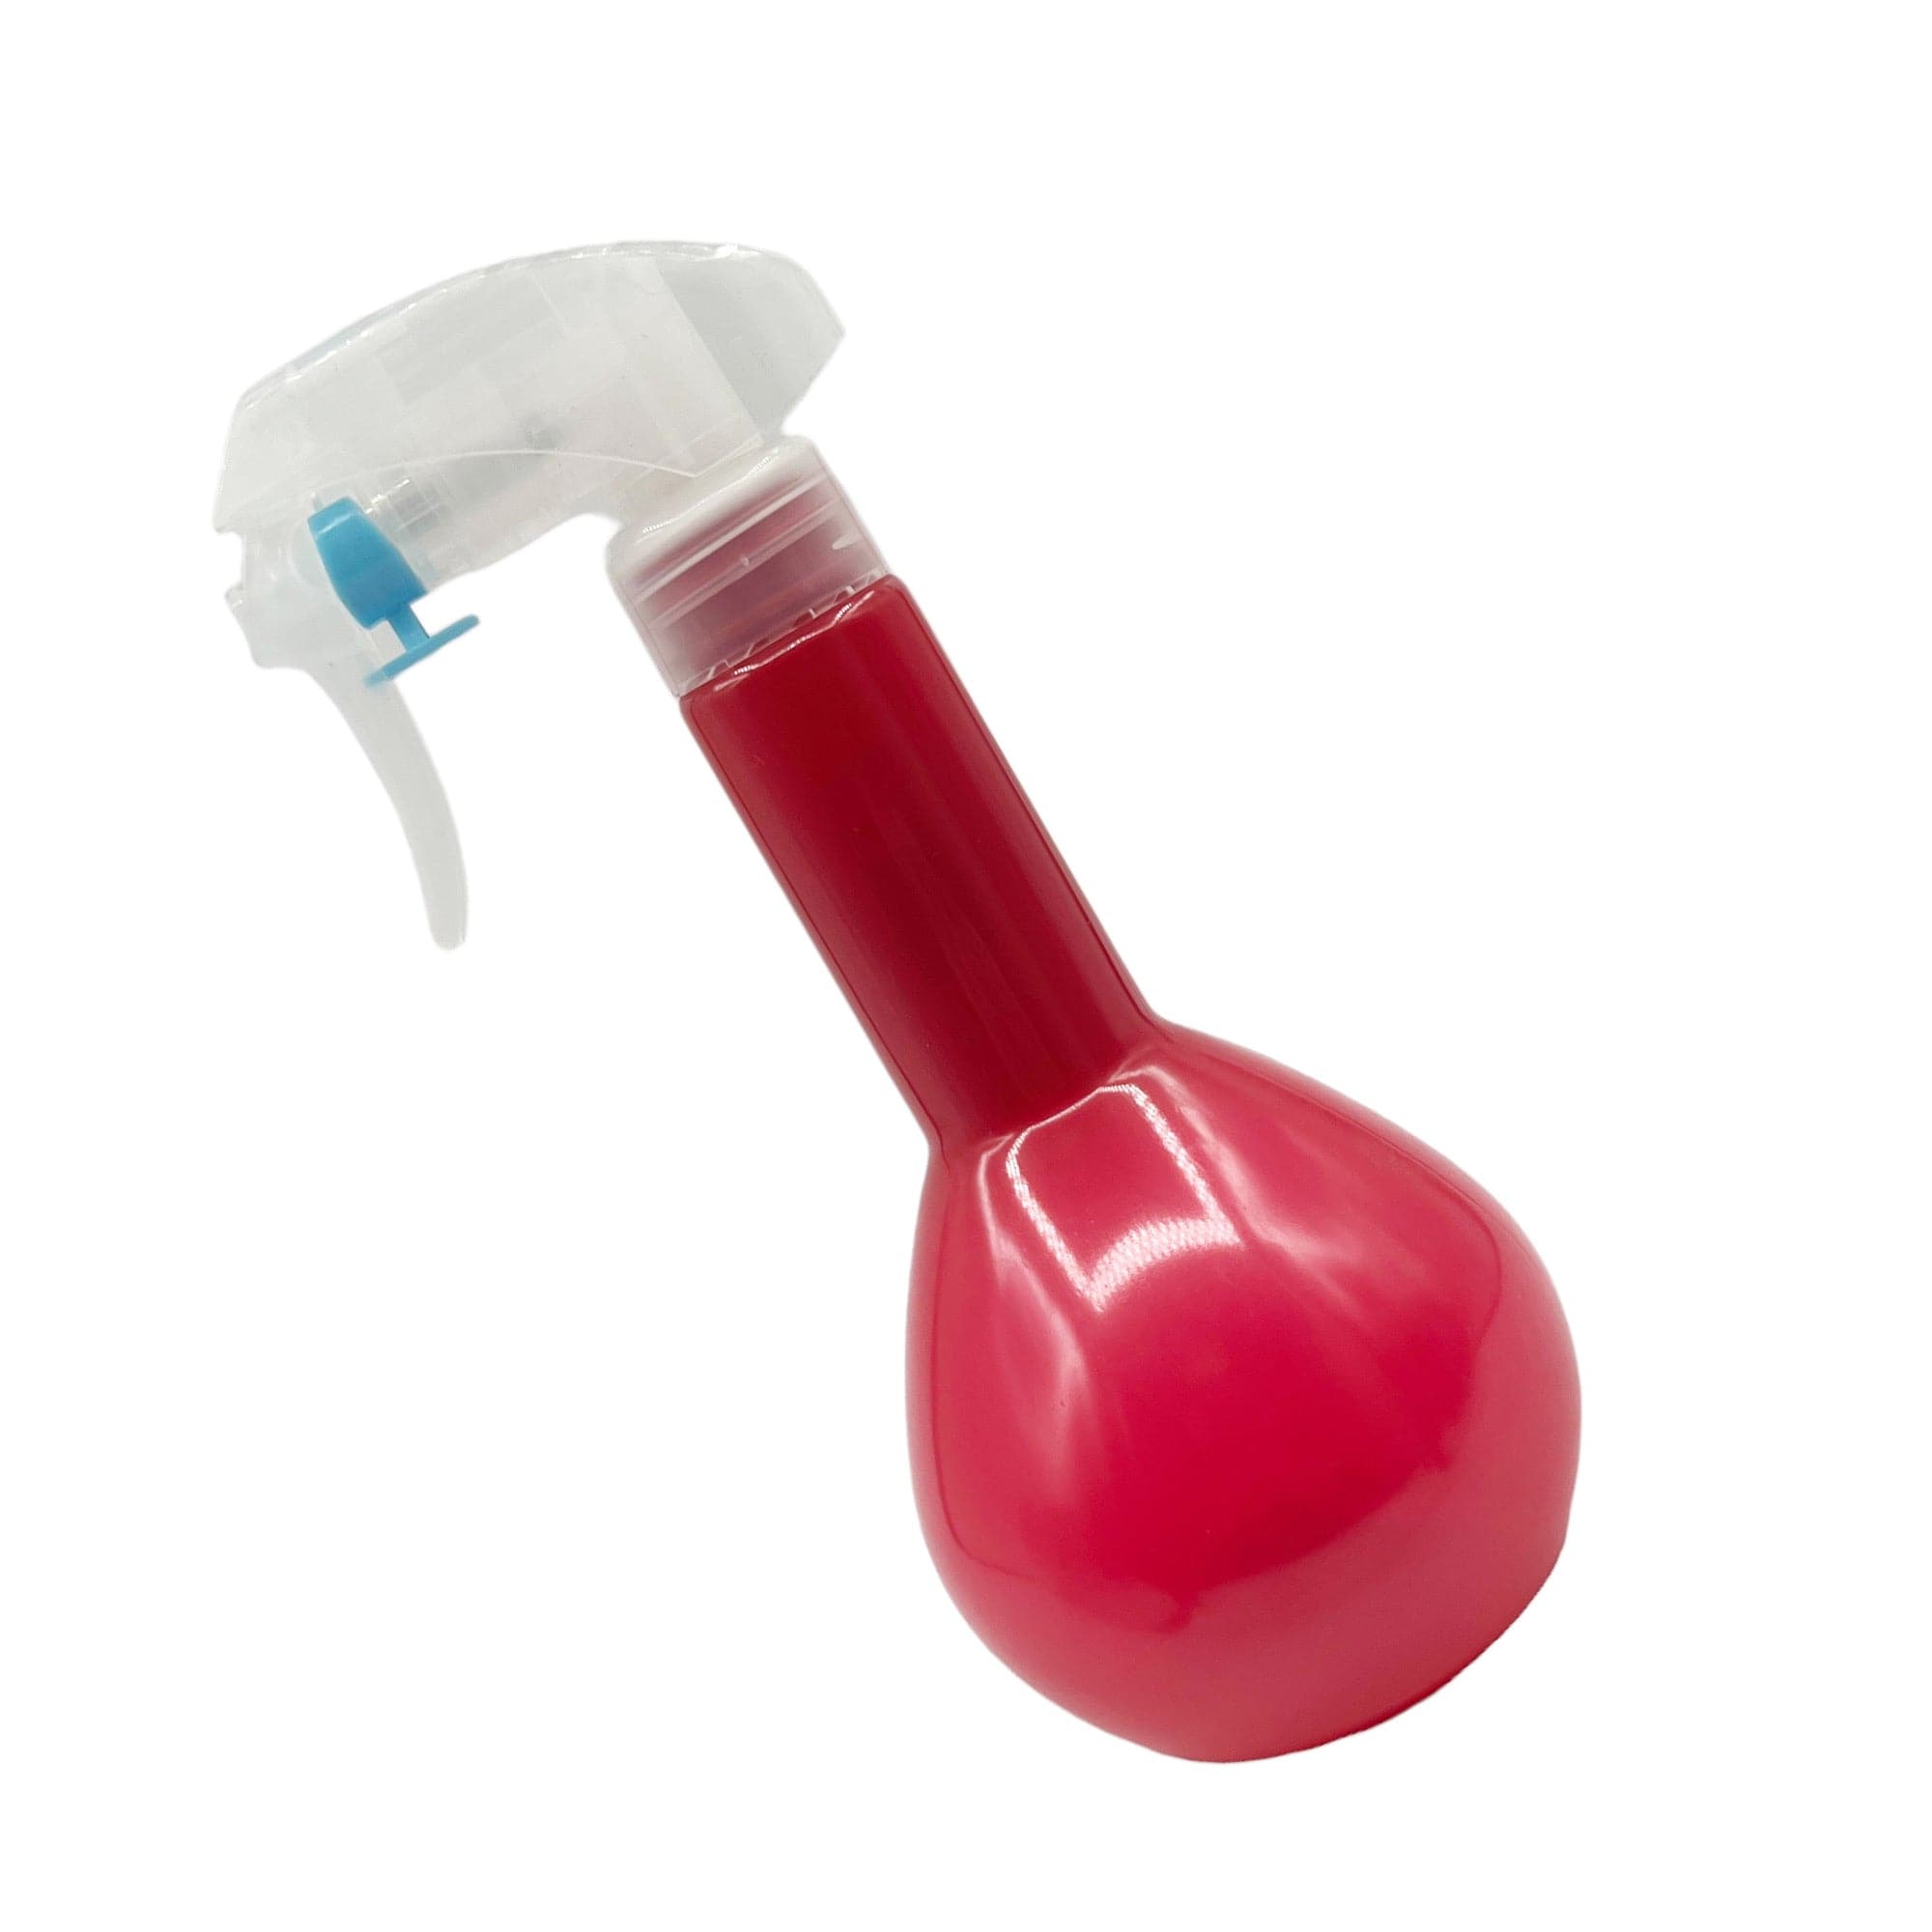 Eson - Water Spray Bottle 300ml Round Empty Refillable Ultra Fine Mist Sprayer (Hot Pink)